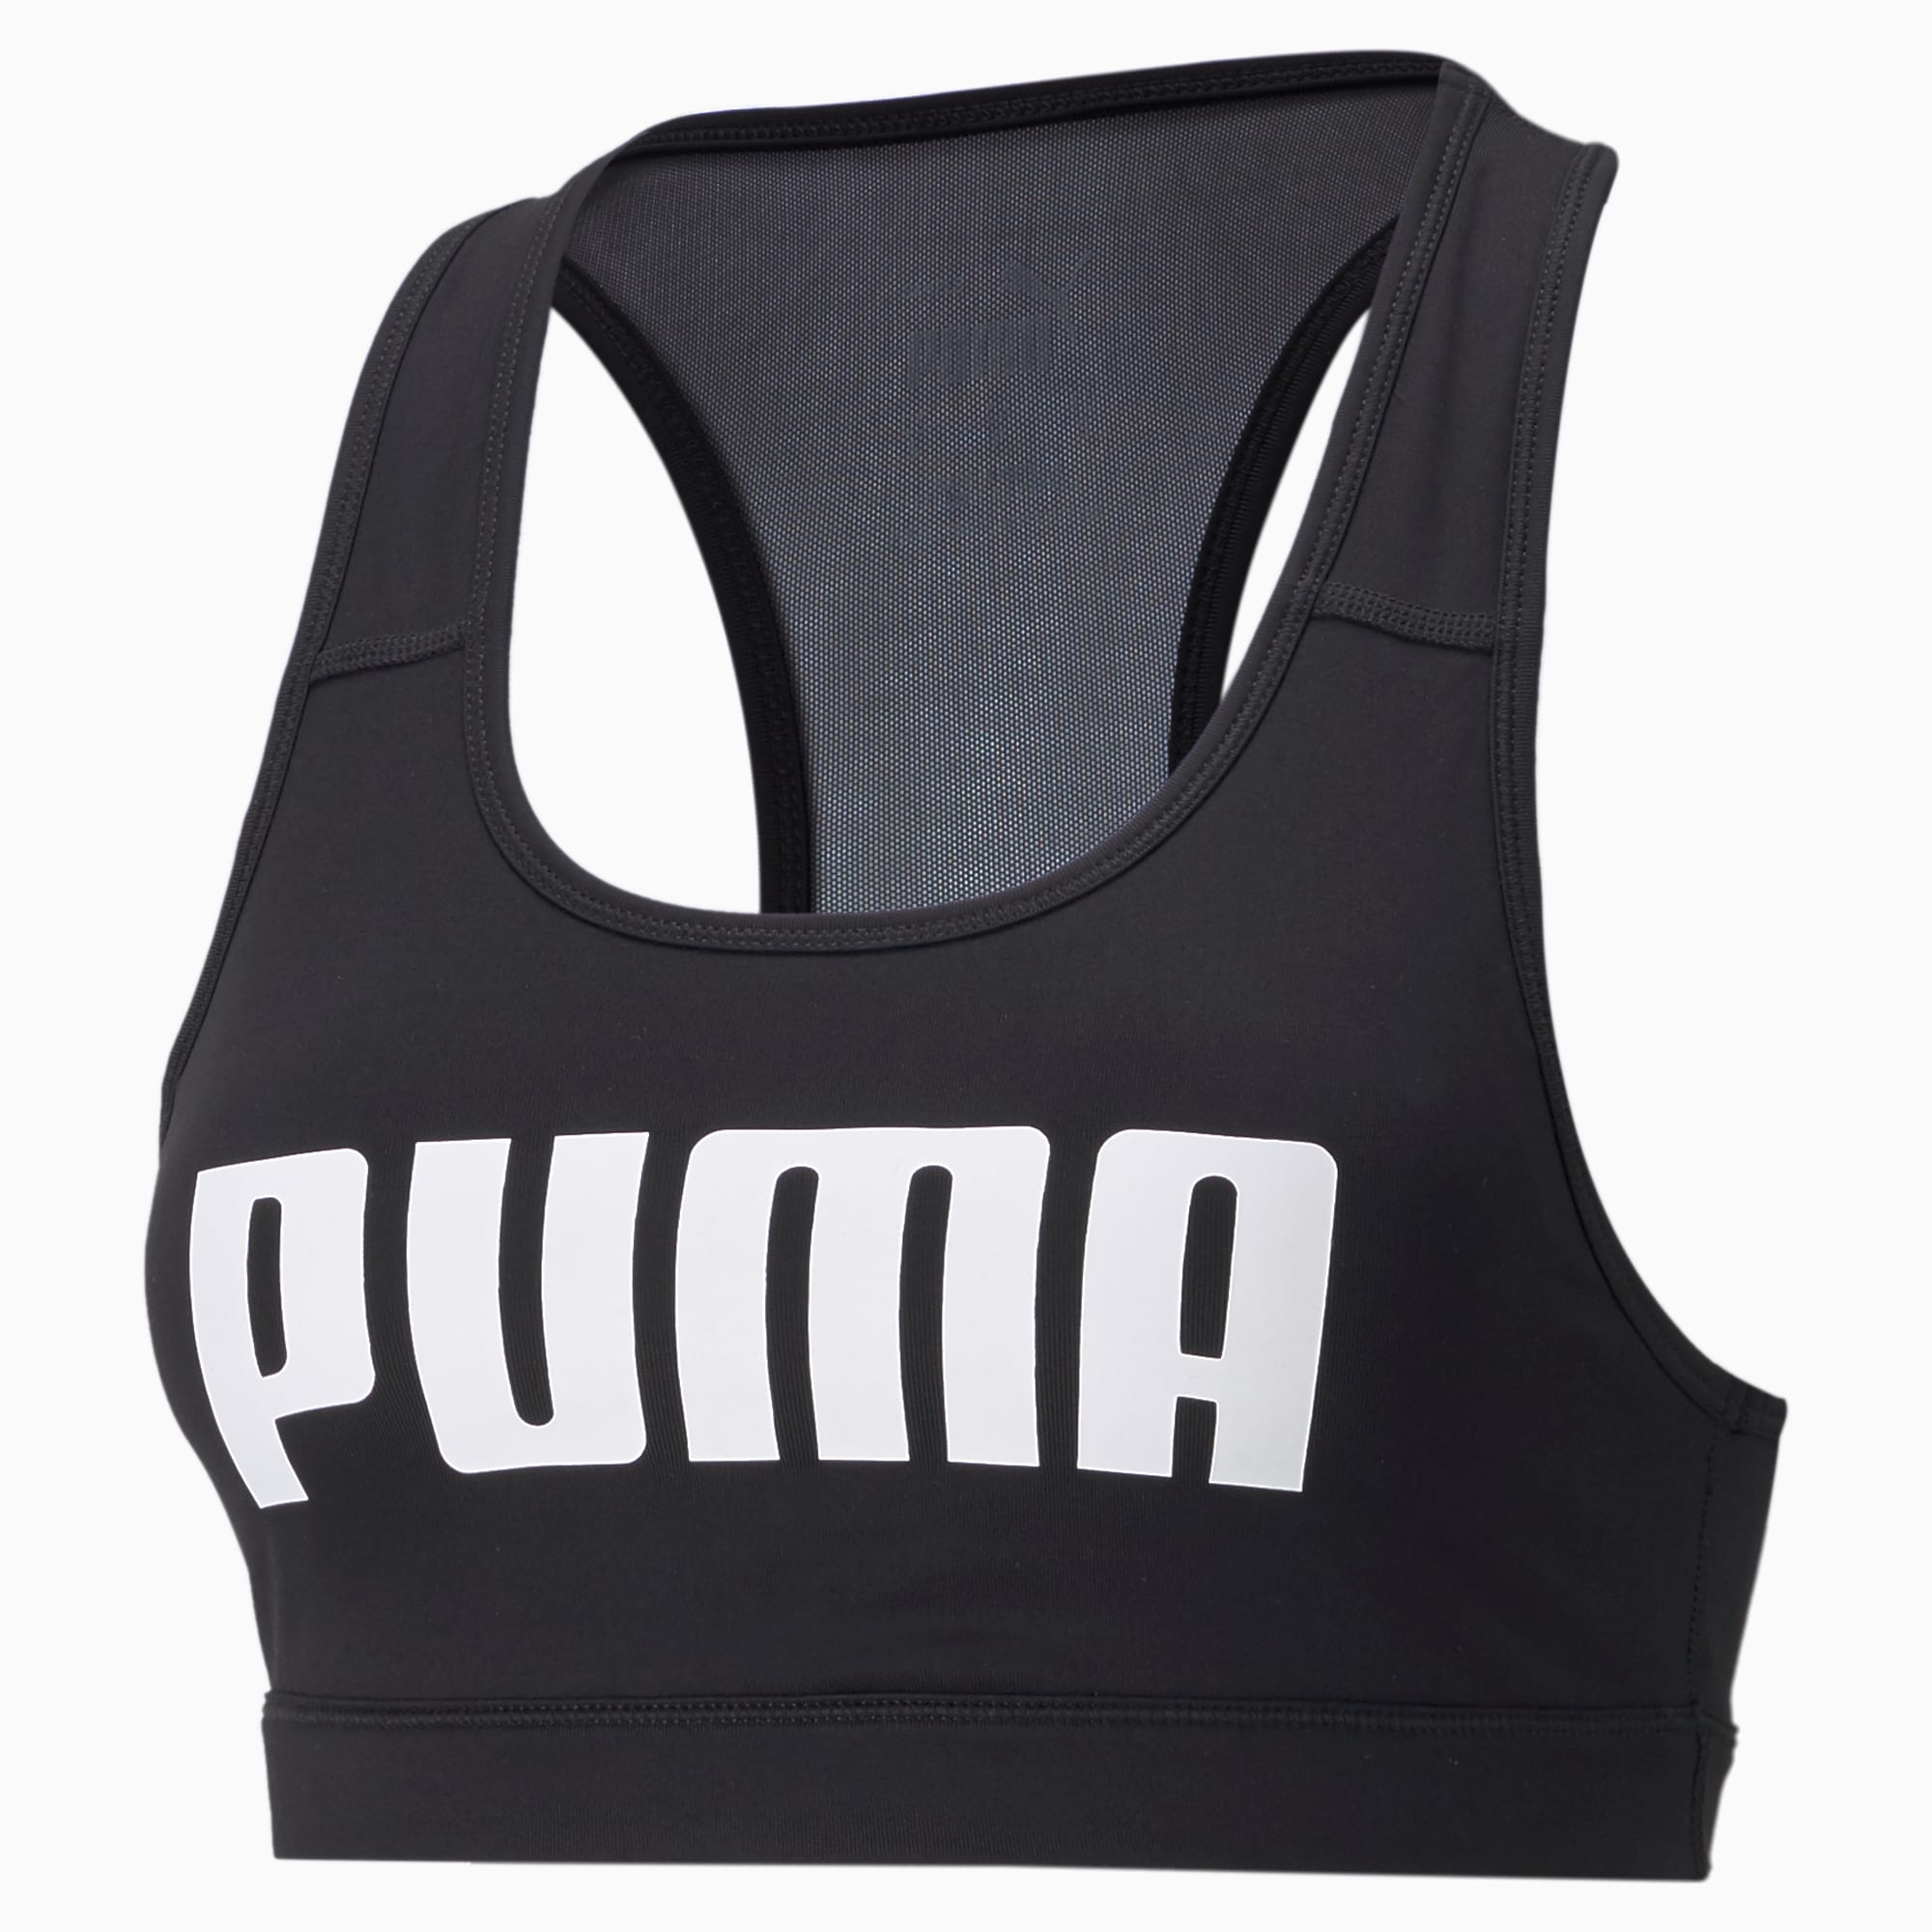 Puma Womens Mid Impact 4Keeps Graphic Bra - Black